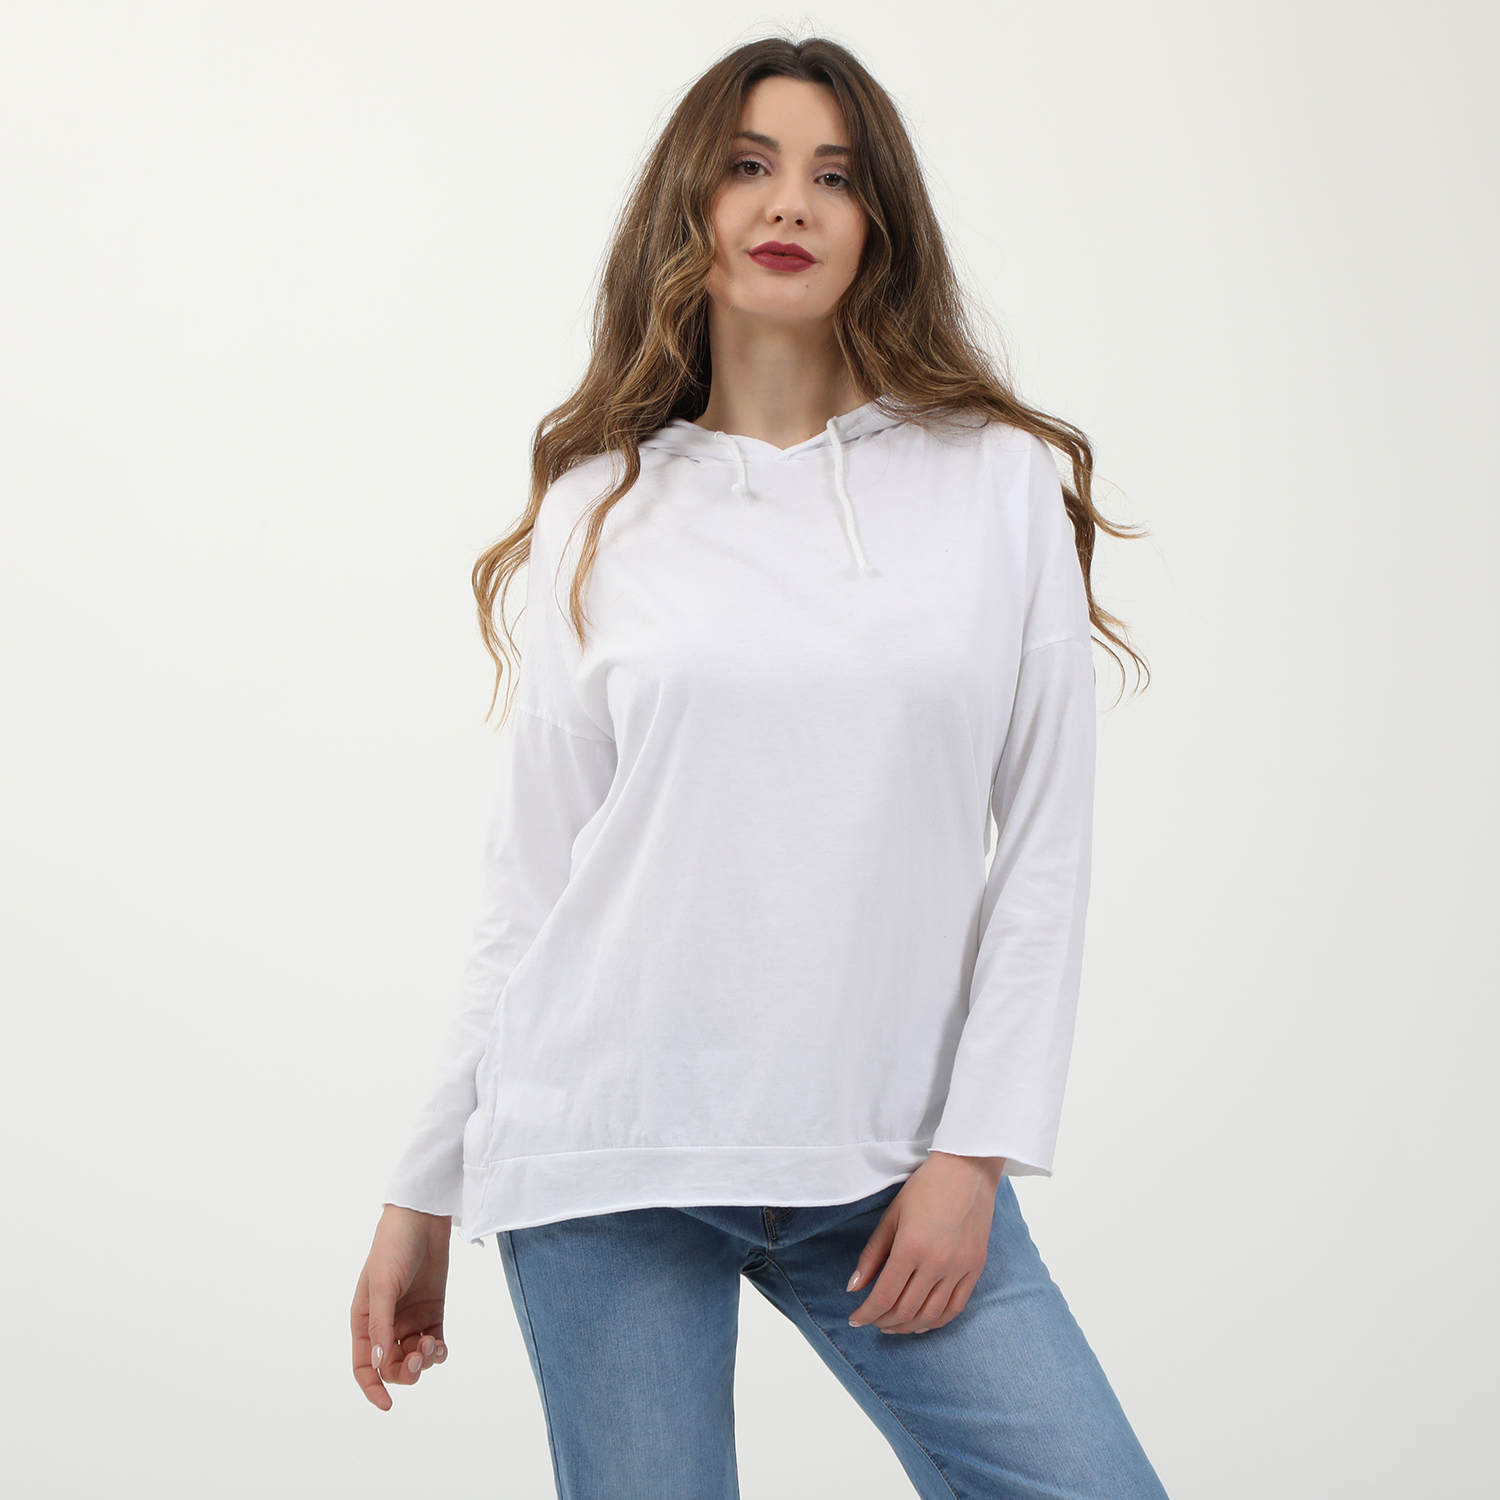 Γυναικεία/Ρούχα/Μπλούζες/Μακρυμάνικες 'ALE - Γυναικεία βαμβακερή μπλούζα 'ALE λευκή